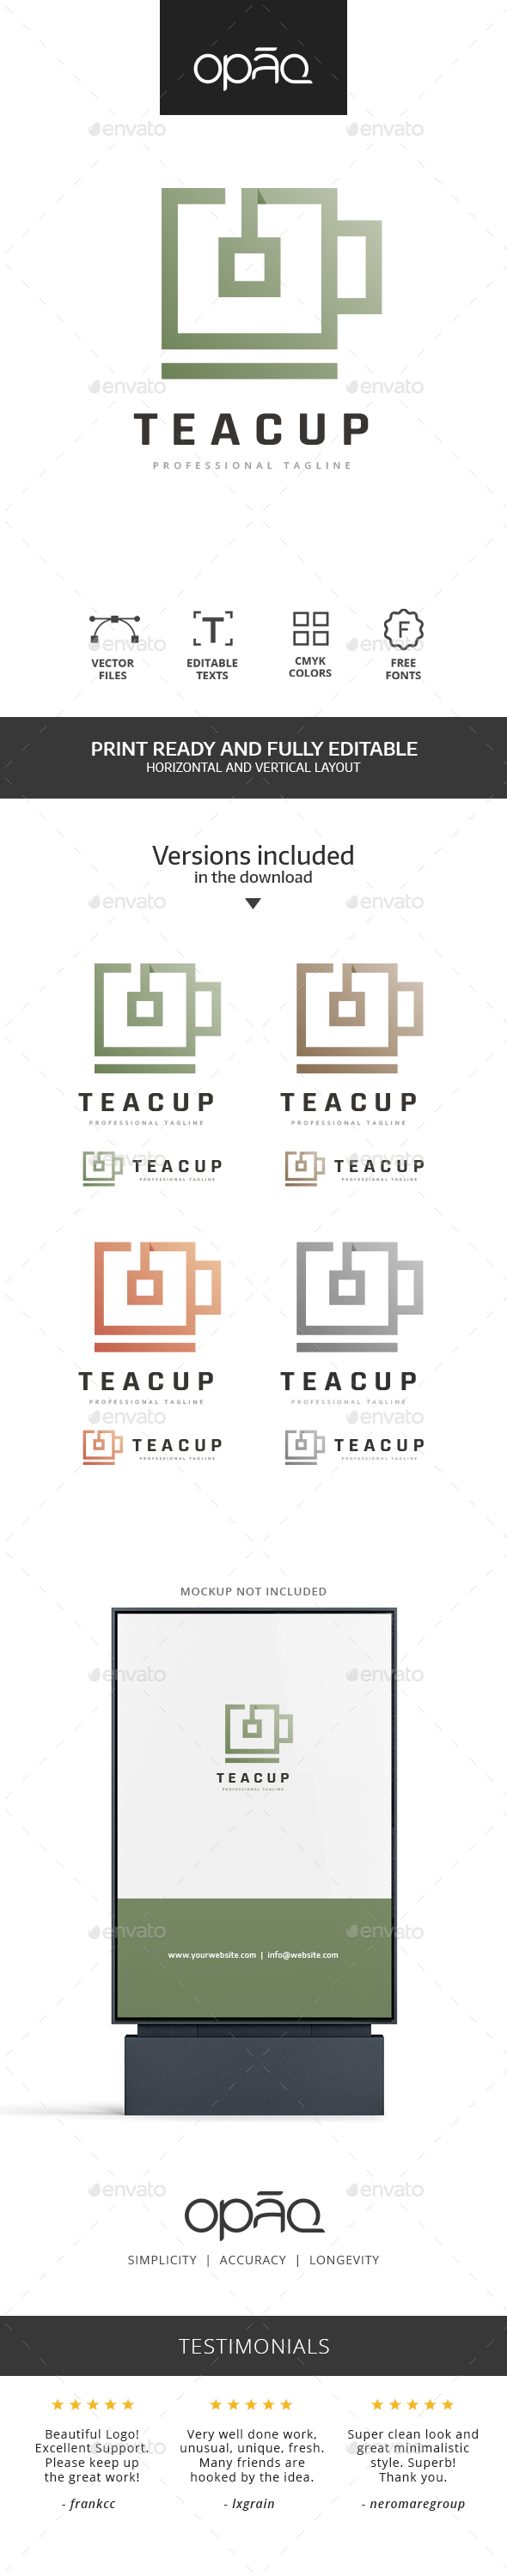 Square Tea Cup Logo